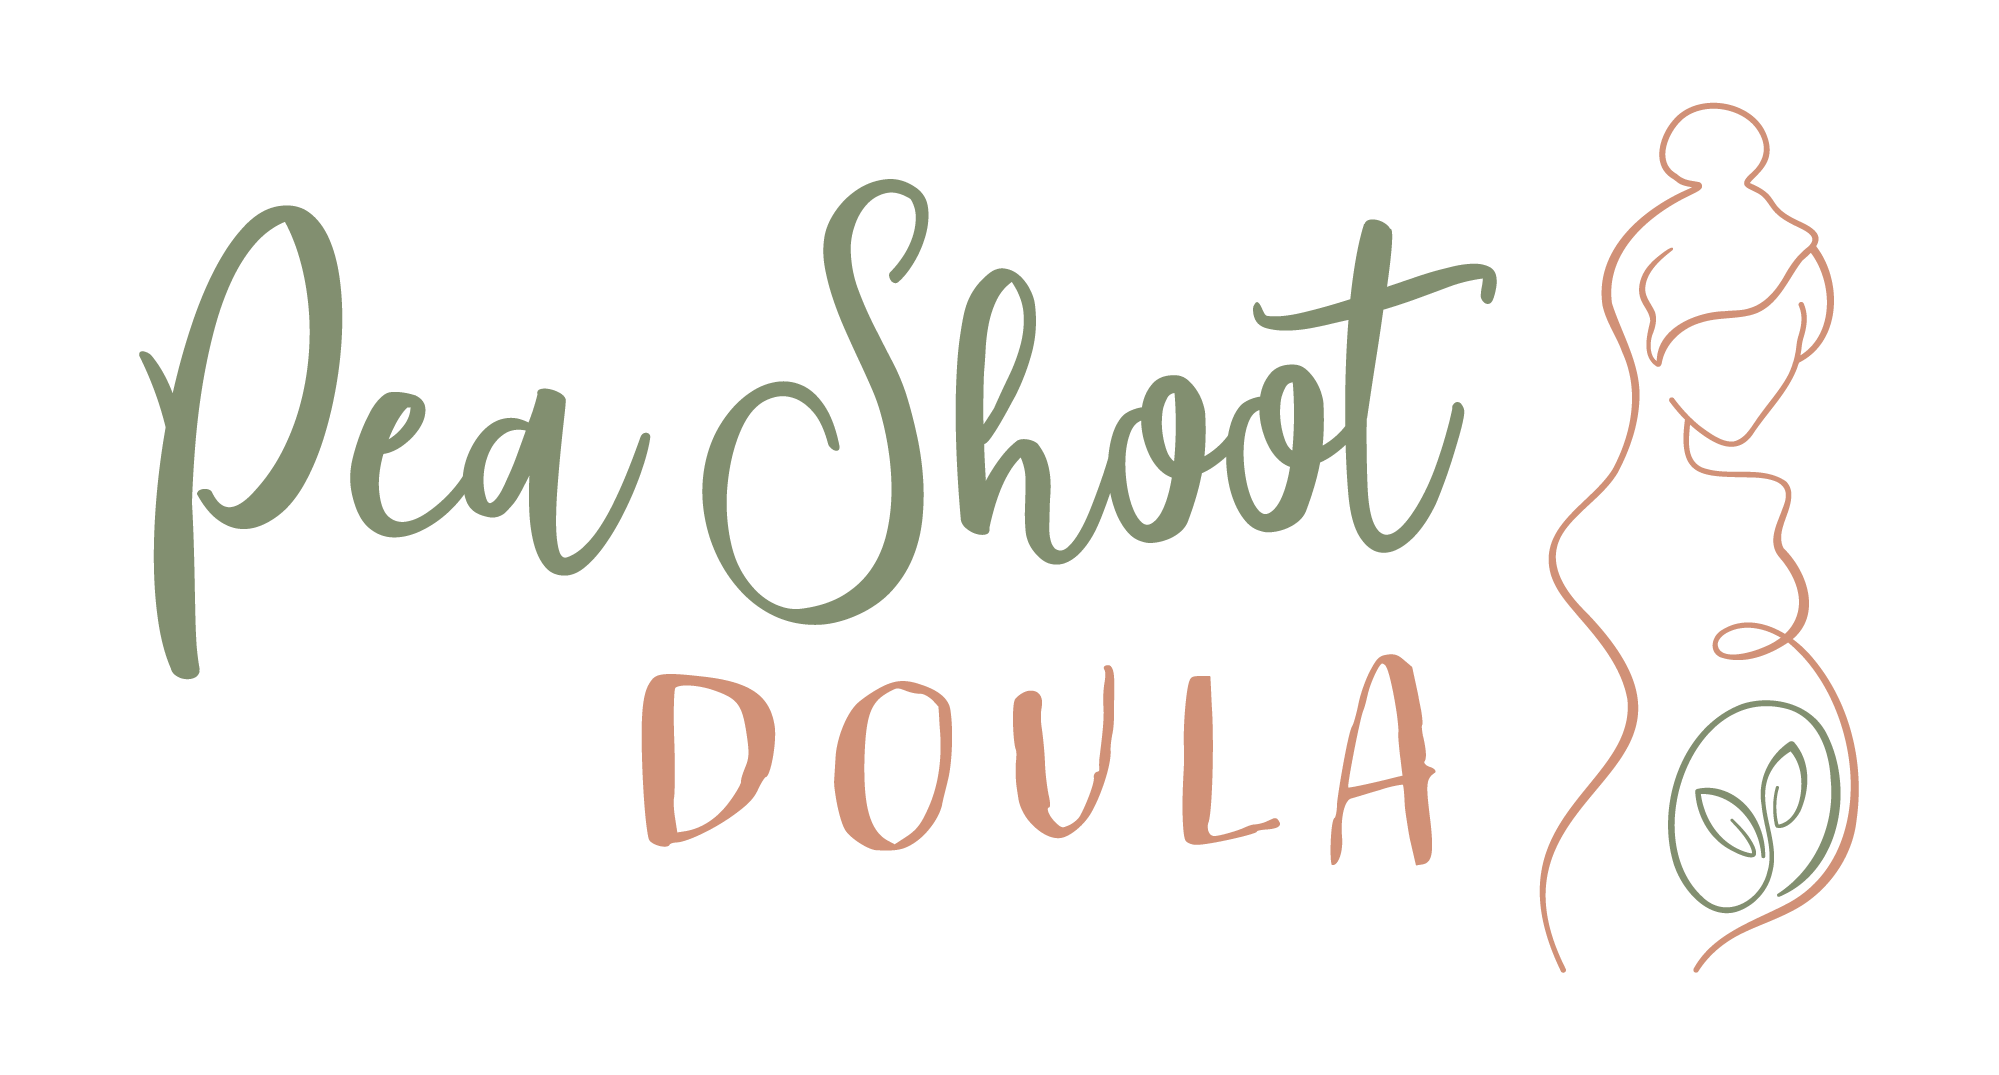 pea shoot doula & photography